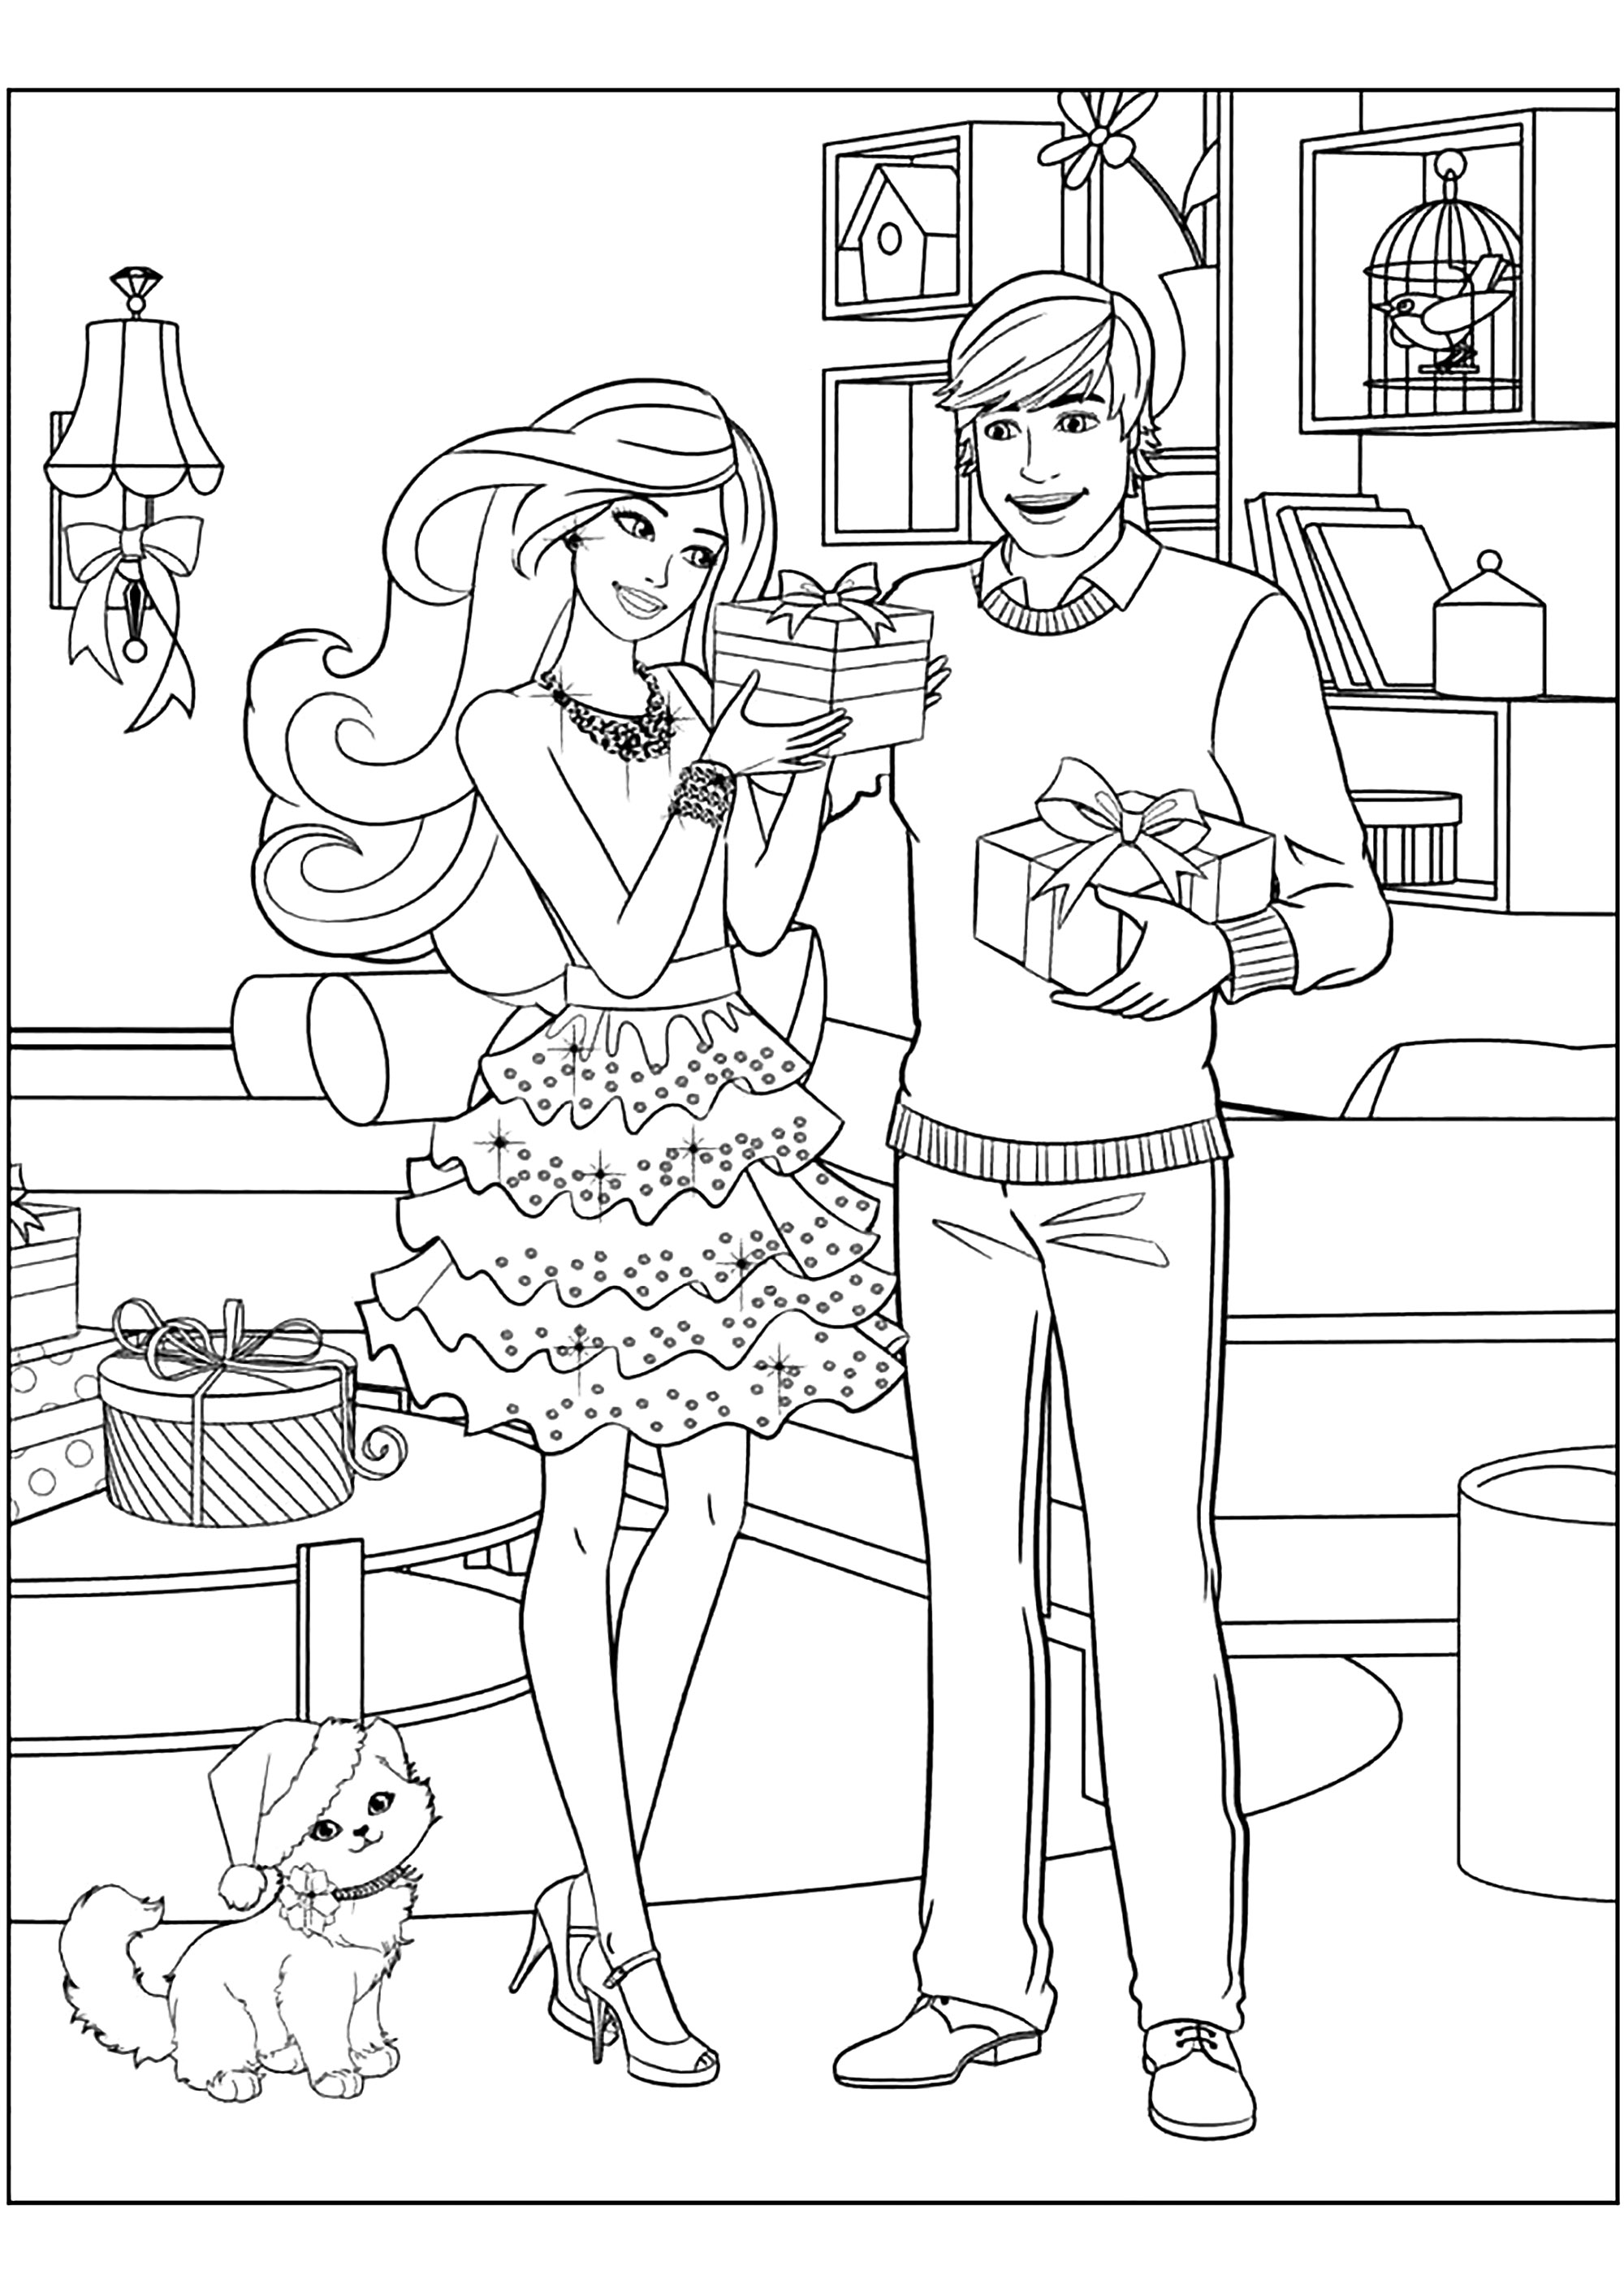 O Ken e a Barbie dão presentes um ao outro. Muitos pormenores para colorir nesta bonita página para colorir com a Barbie e o Ken